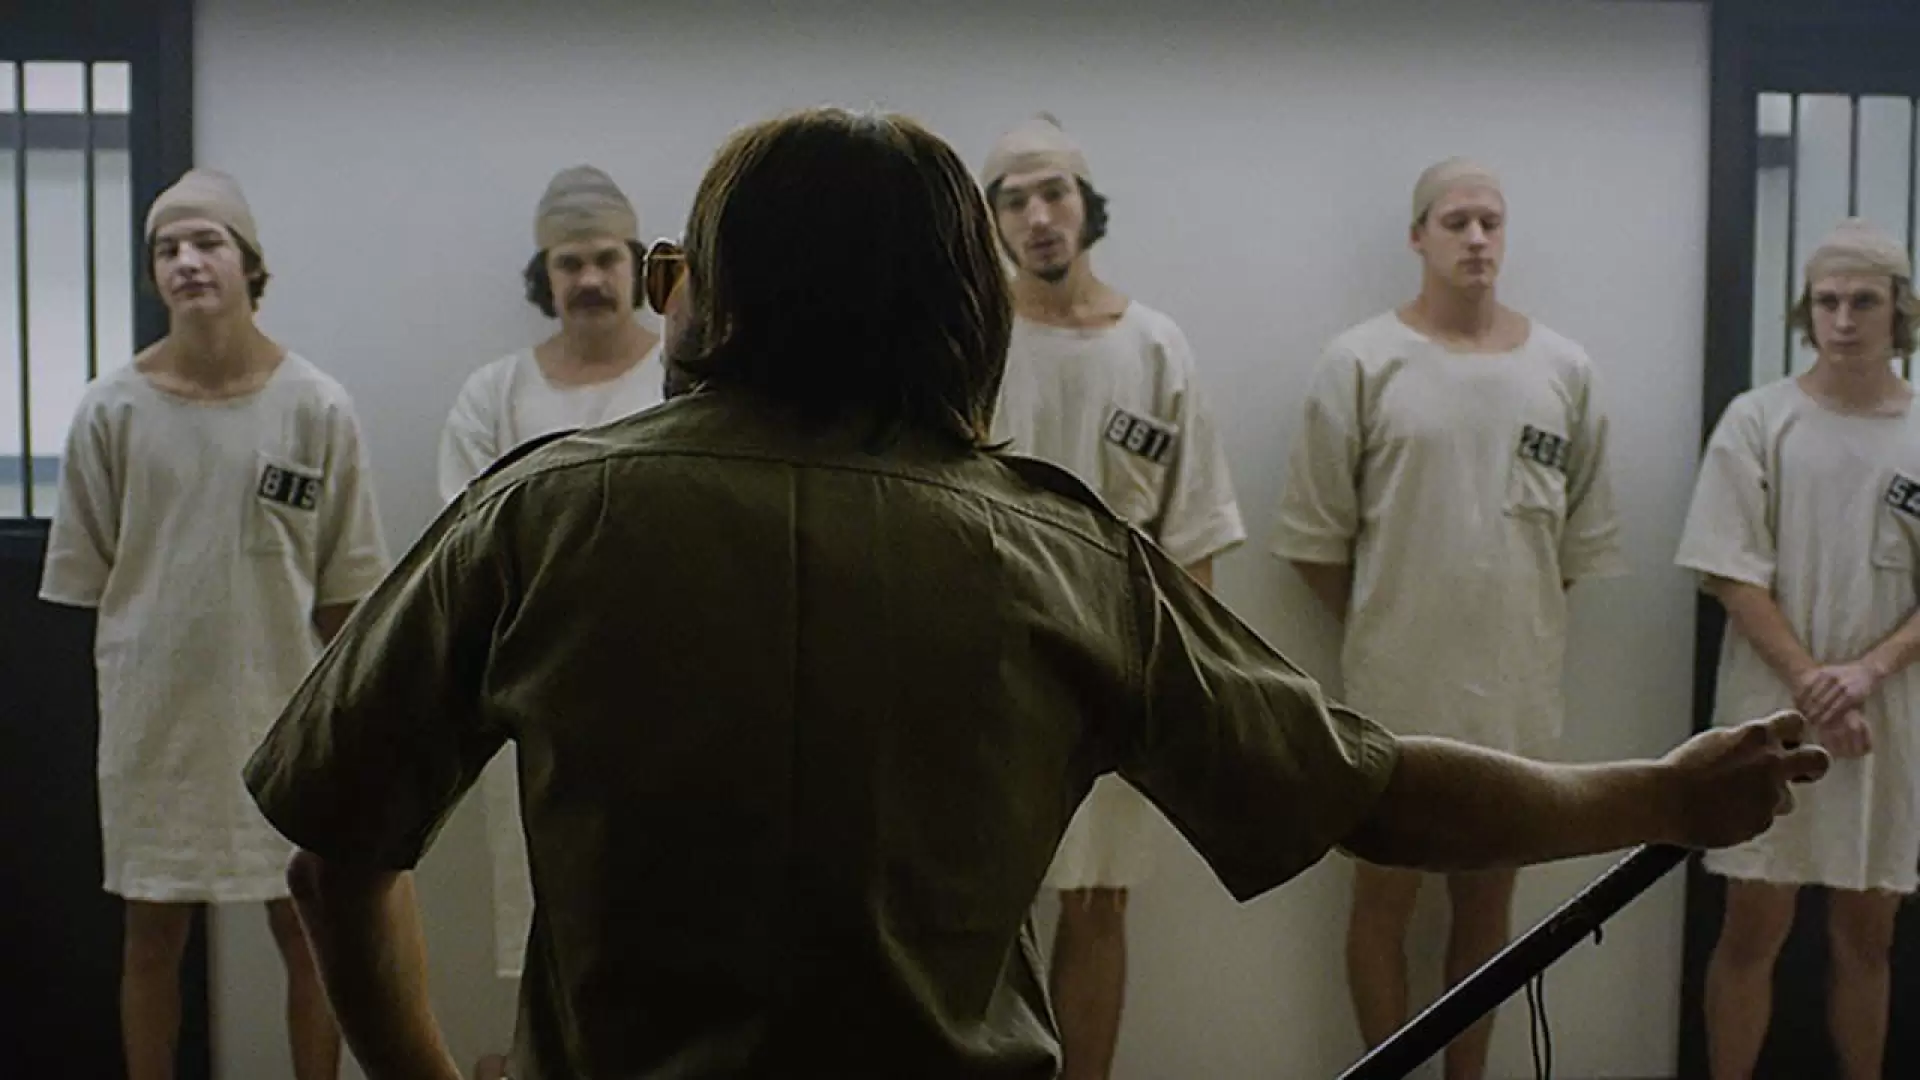 دانلود فیلم The Stanford Prison Experiment 2015 (آزمایش زندان استنفورد) با زیرنویس فارسی و تماشای آنلاین